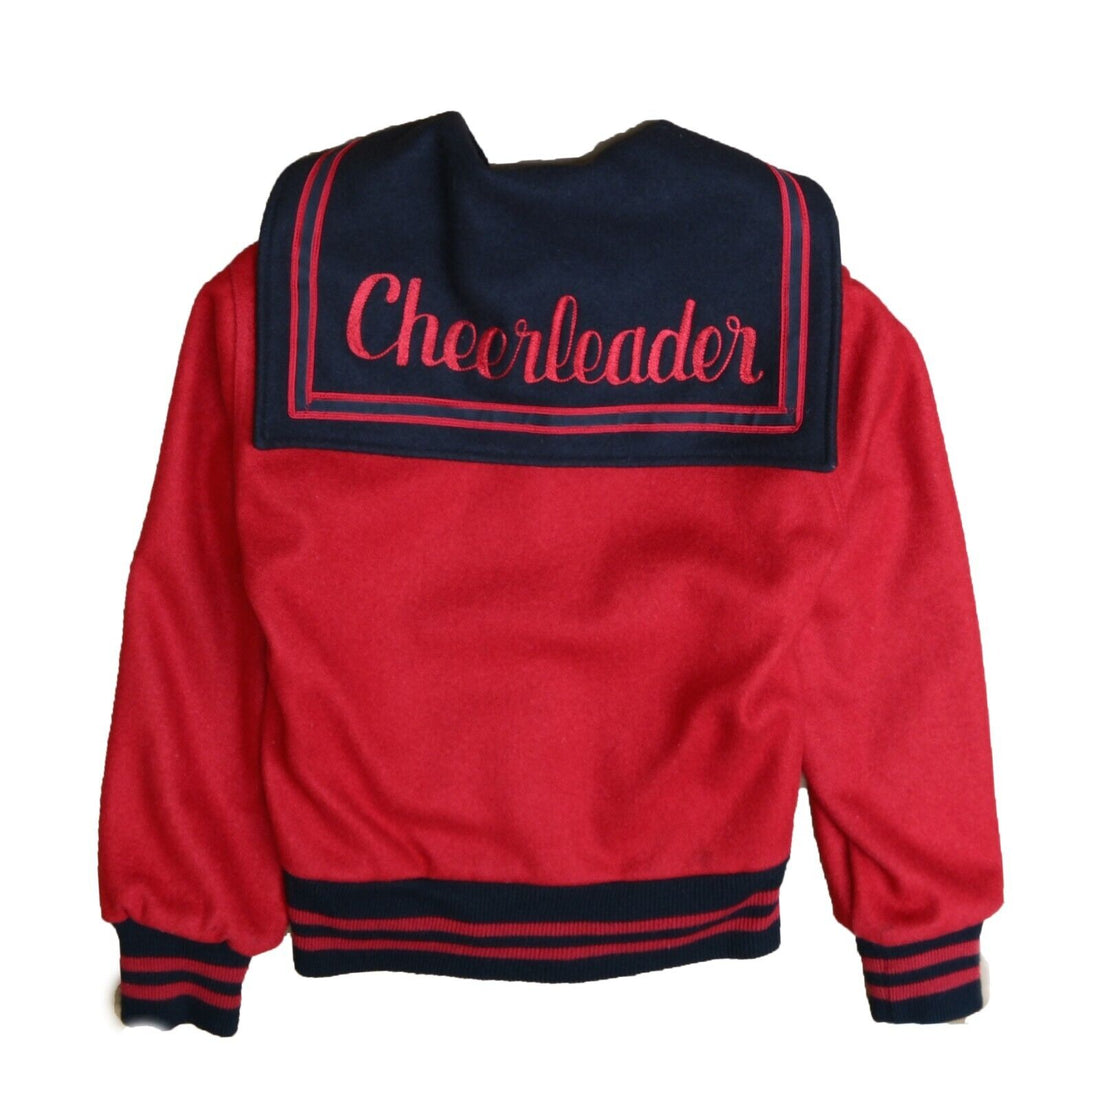 Vintage Highschool Wool Varsity Cheerleader Jacket Women Size Small Red